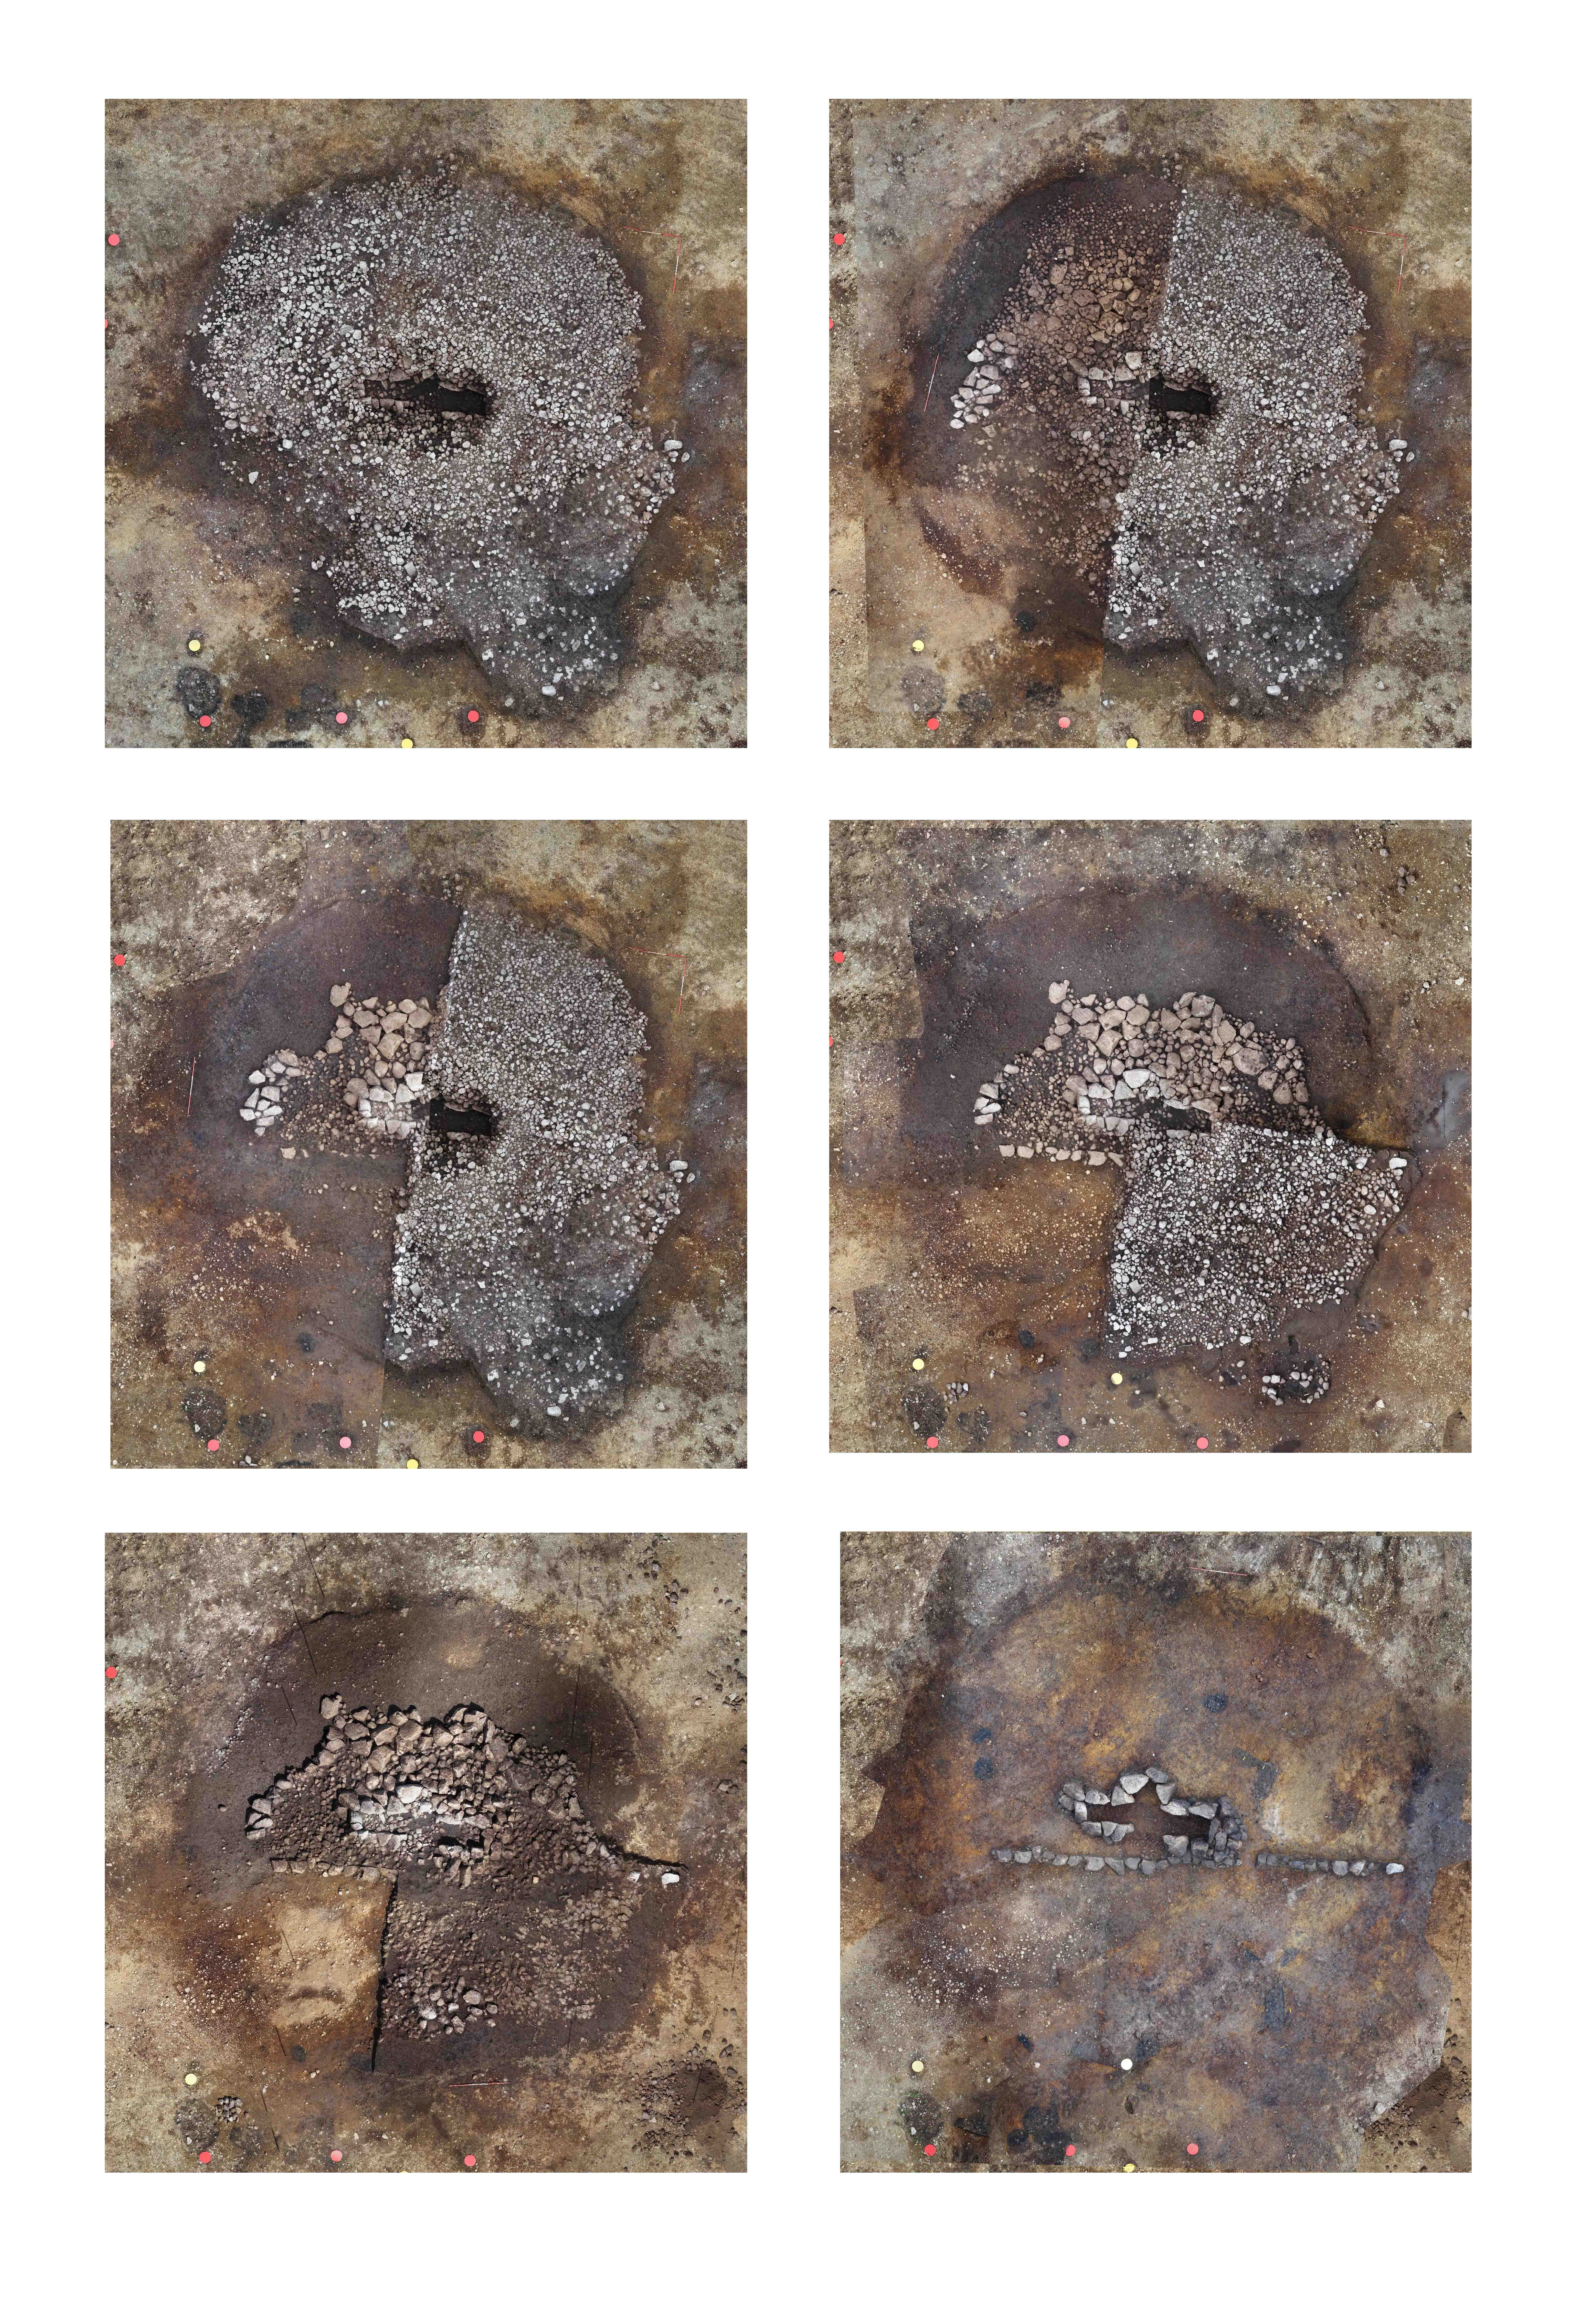 Gravhaug i ulike faser av utgraving